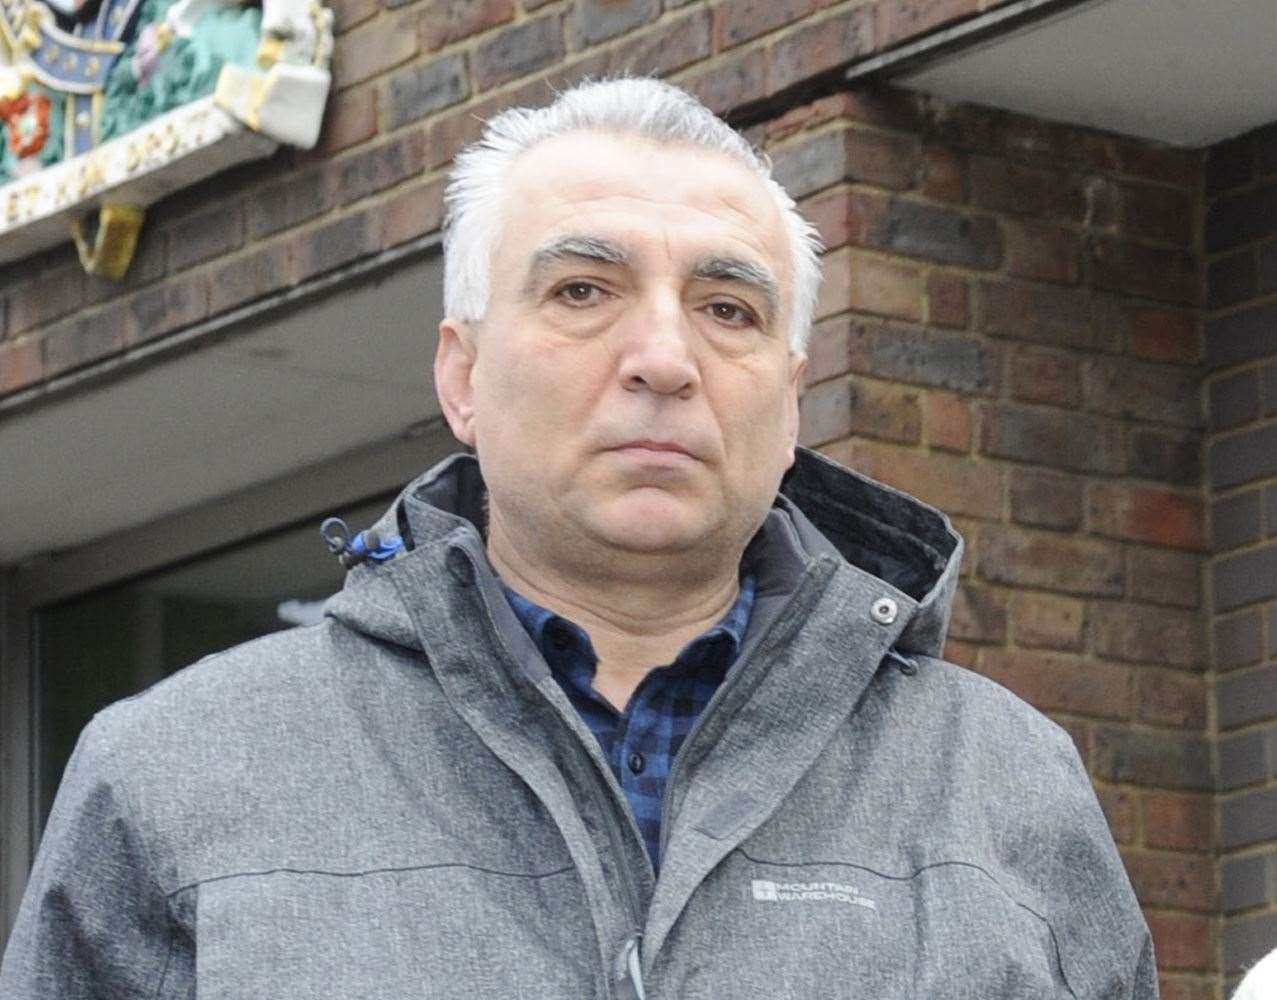 Westgate Dry Cleaners owner Sedat Ozdogan